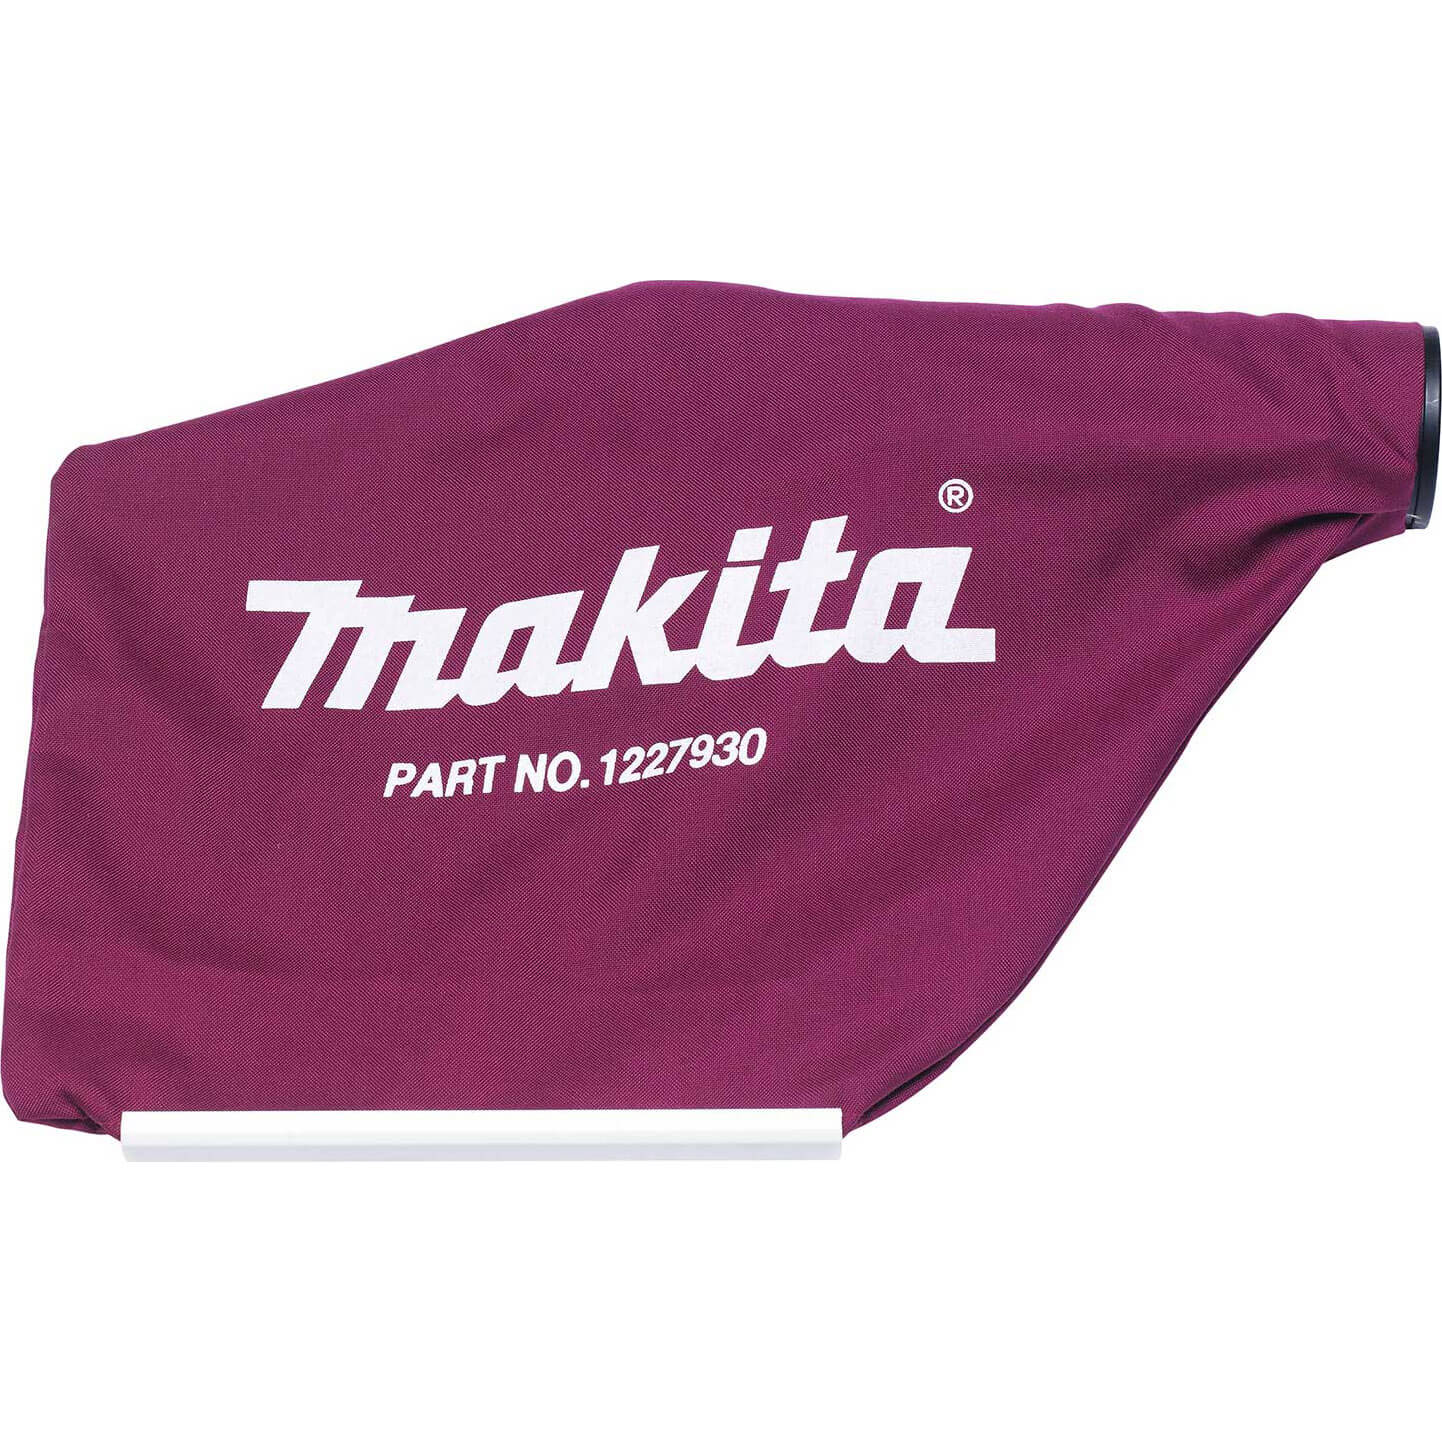 Makita Dust Bag for DKP180 Cordless Planer